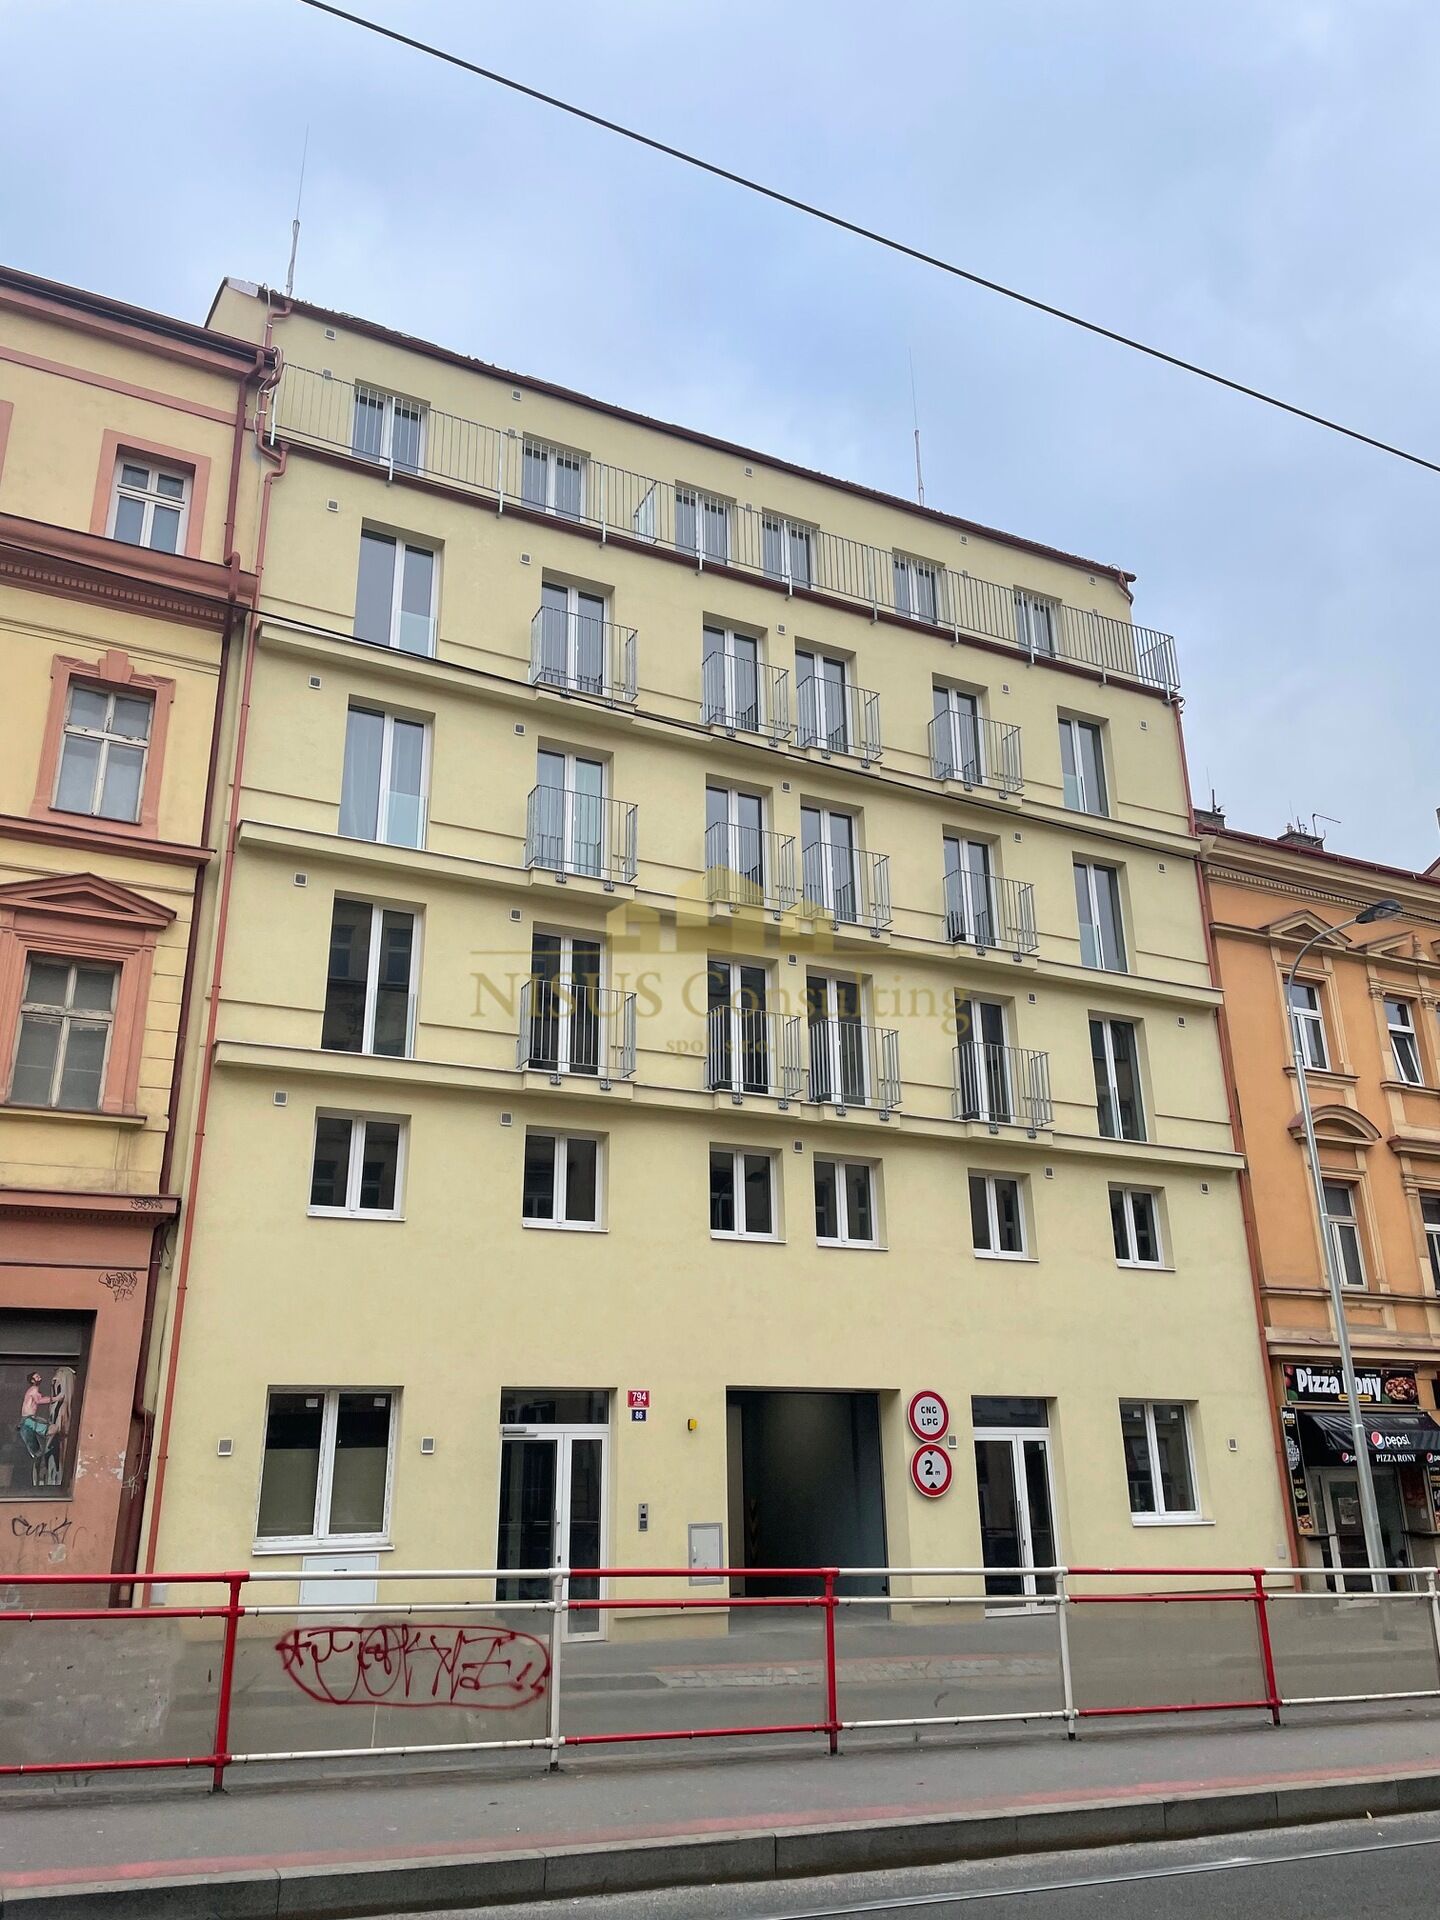 Rezidence Košíře, prodej novostavby bytu 1+kk, 69 m2, terasa, sklep, Praha 5 - Košíře